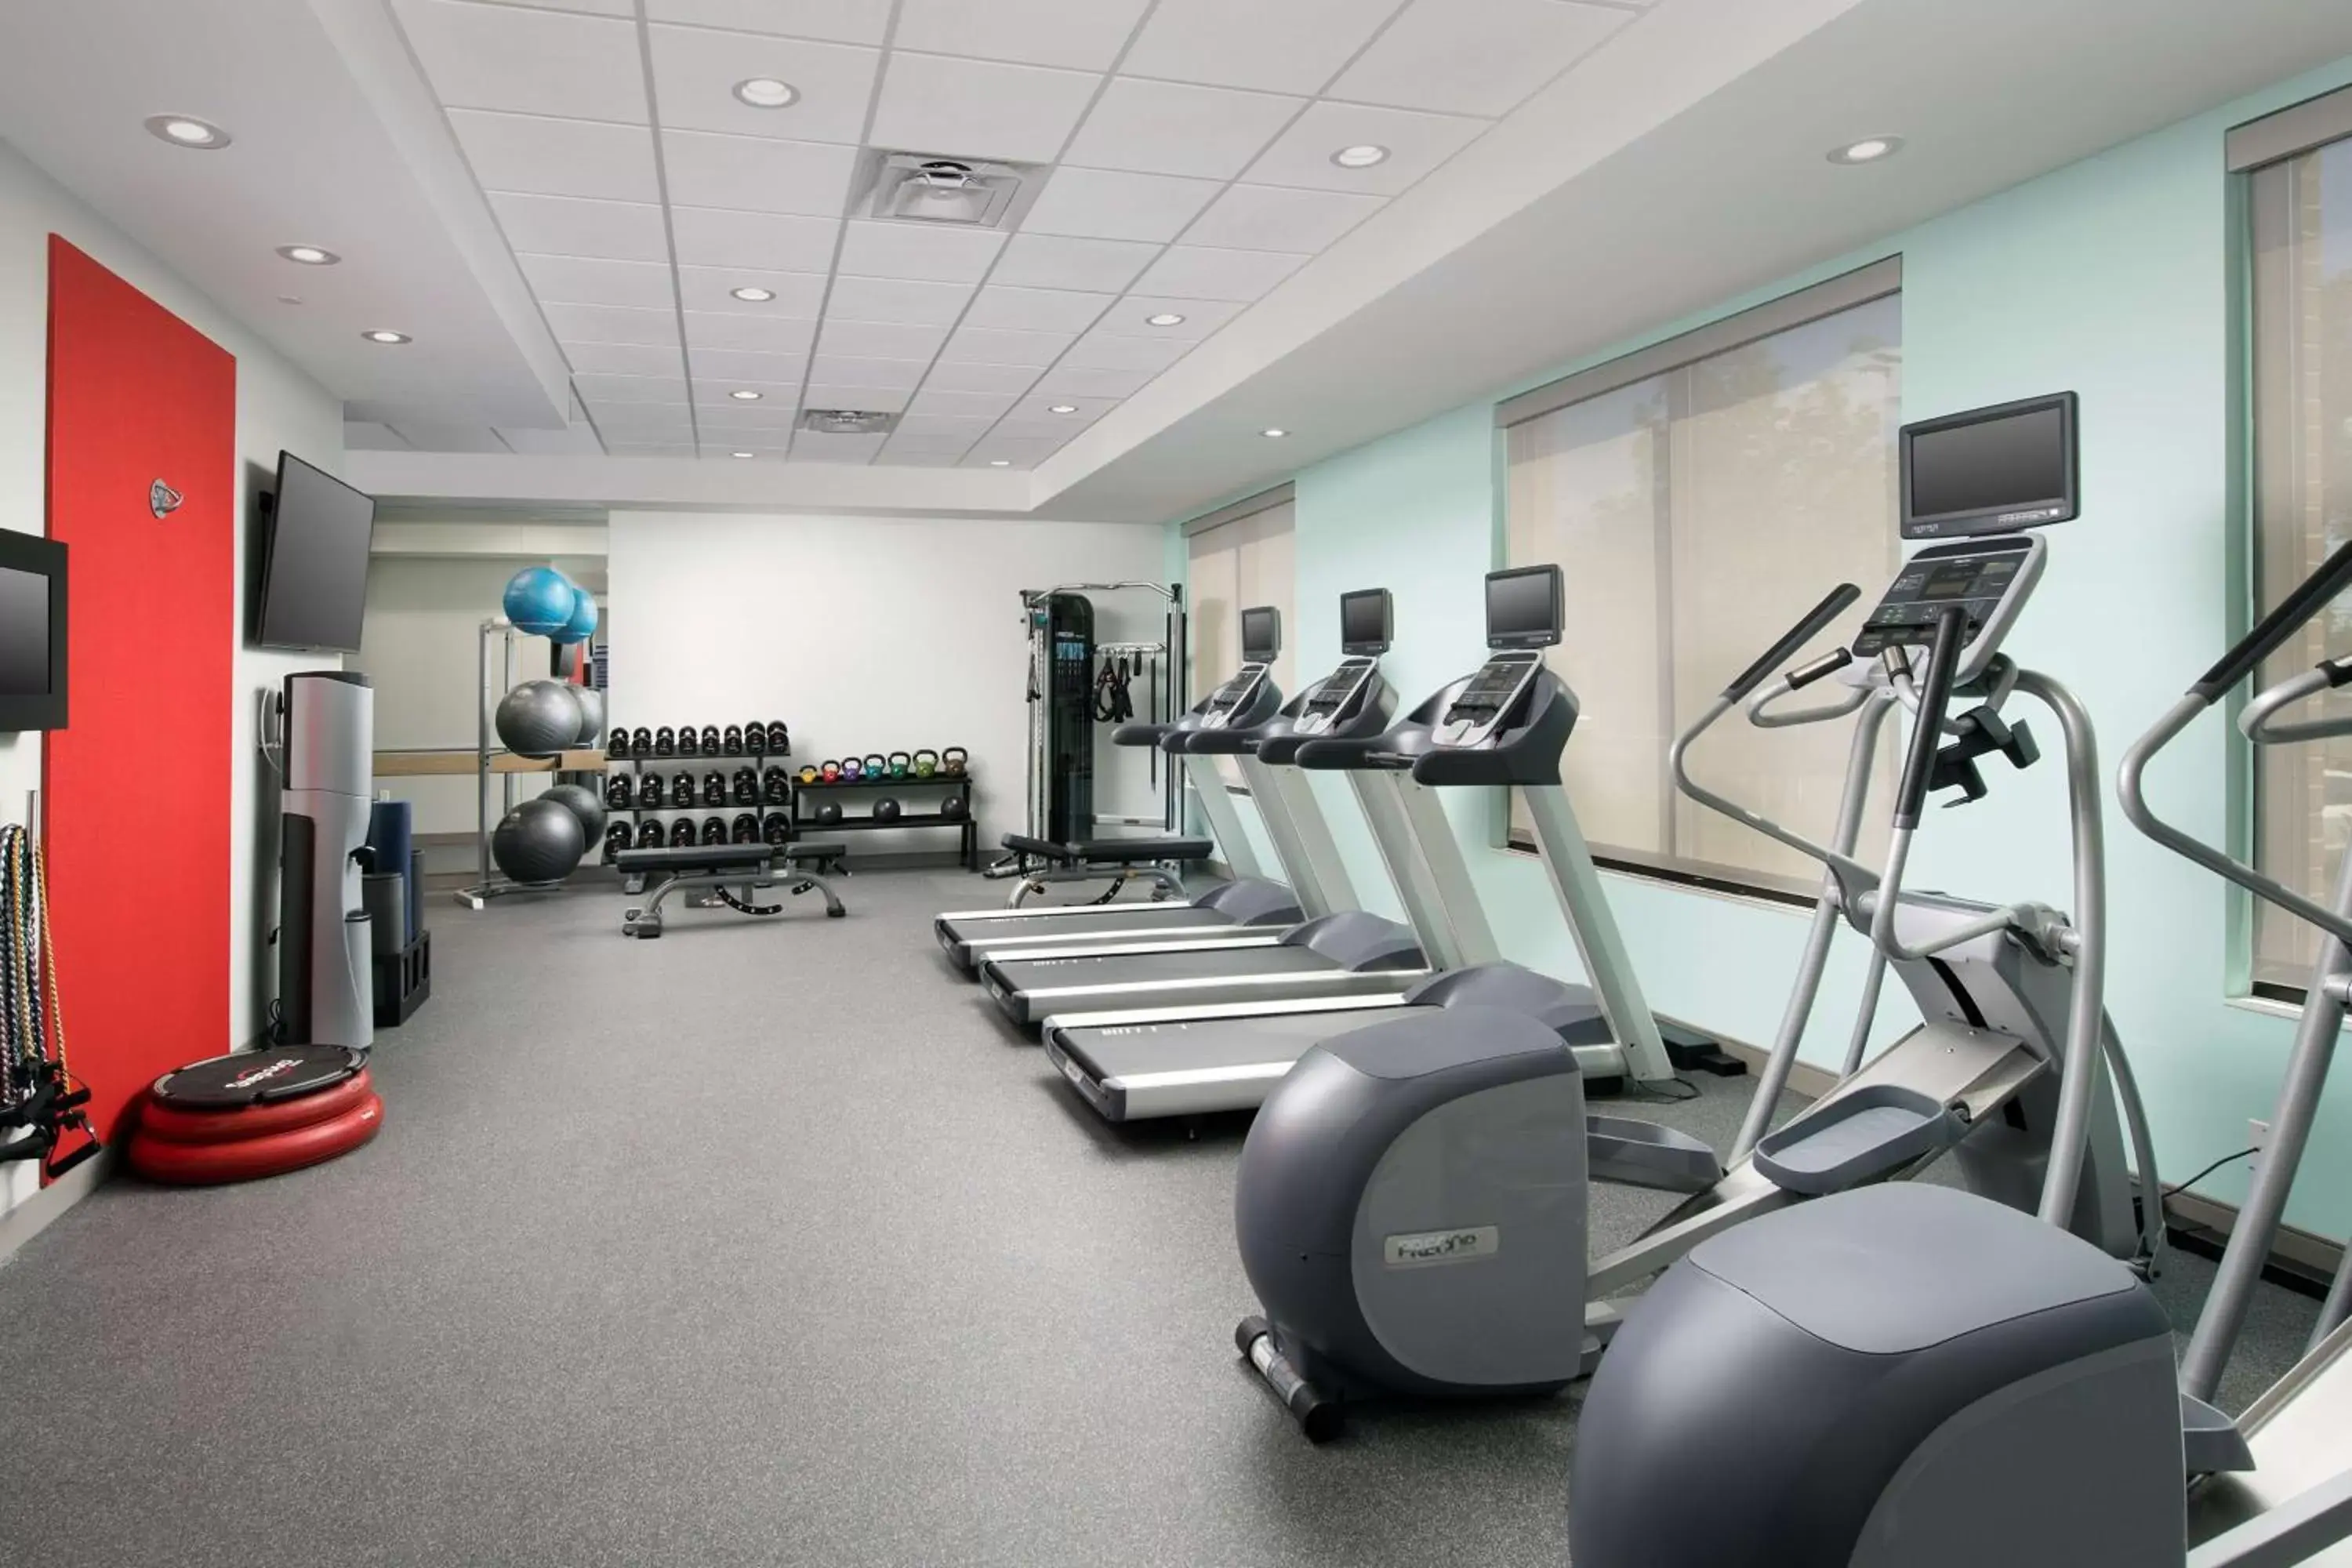 Fitness centre/facilities, Fitness Center/Facilities in Tru By Hilton Murfreesboro, Tn